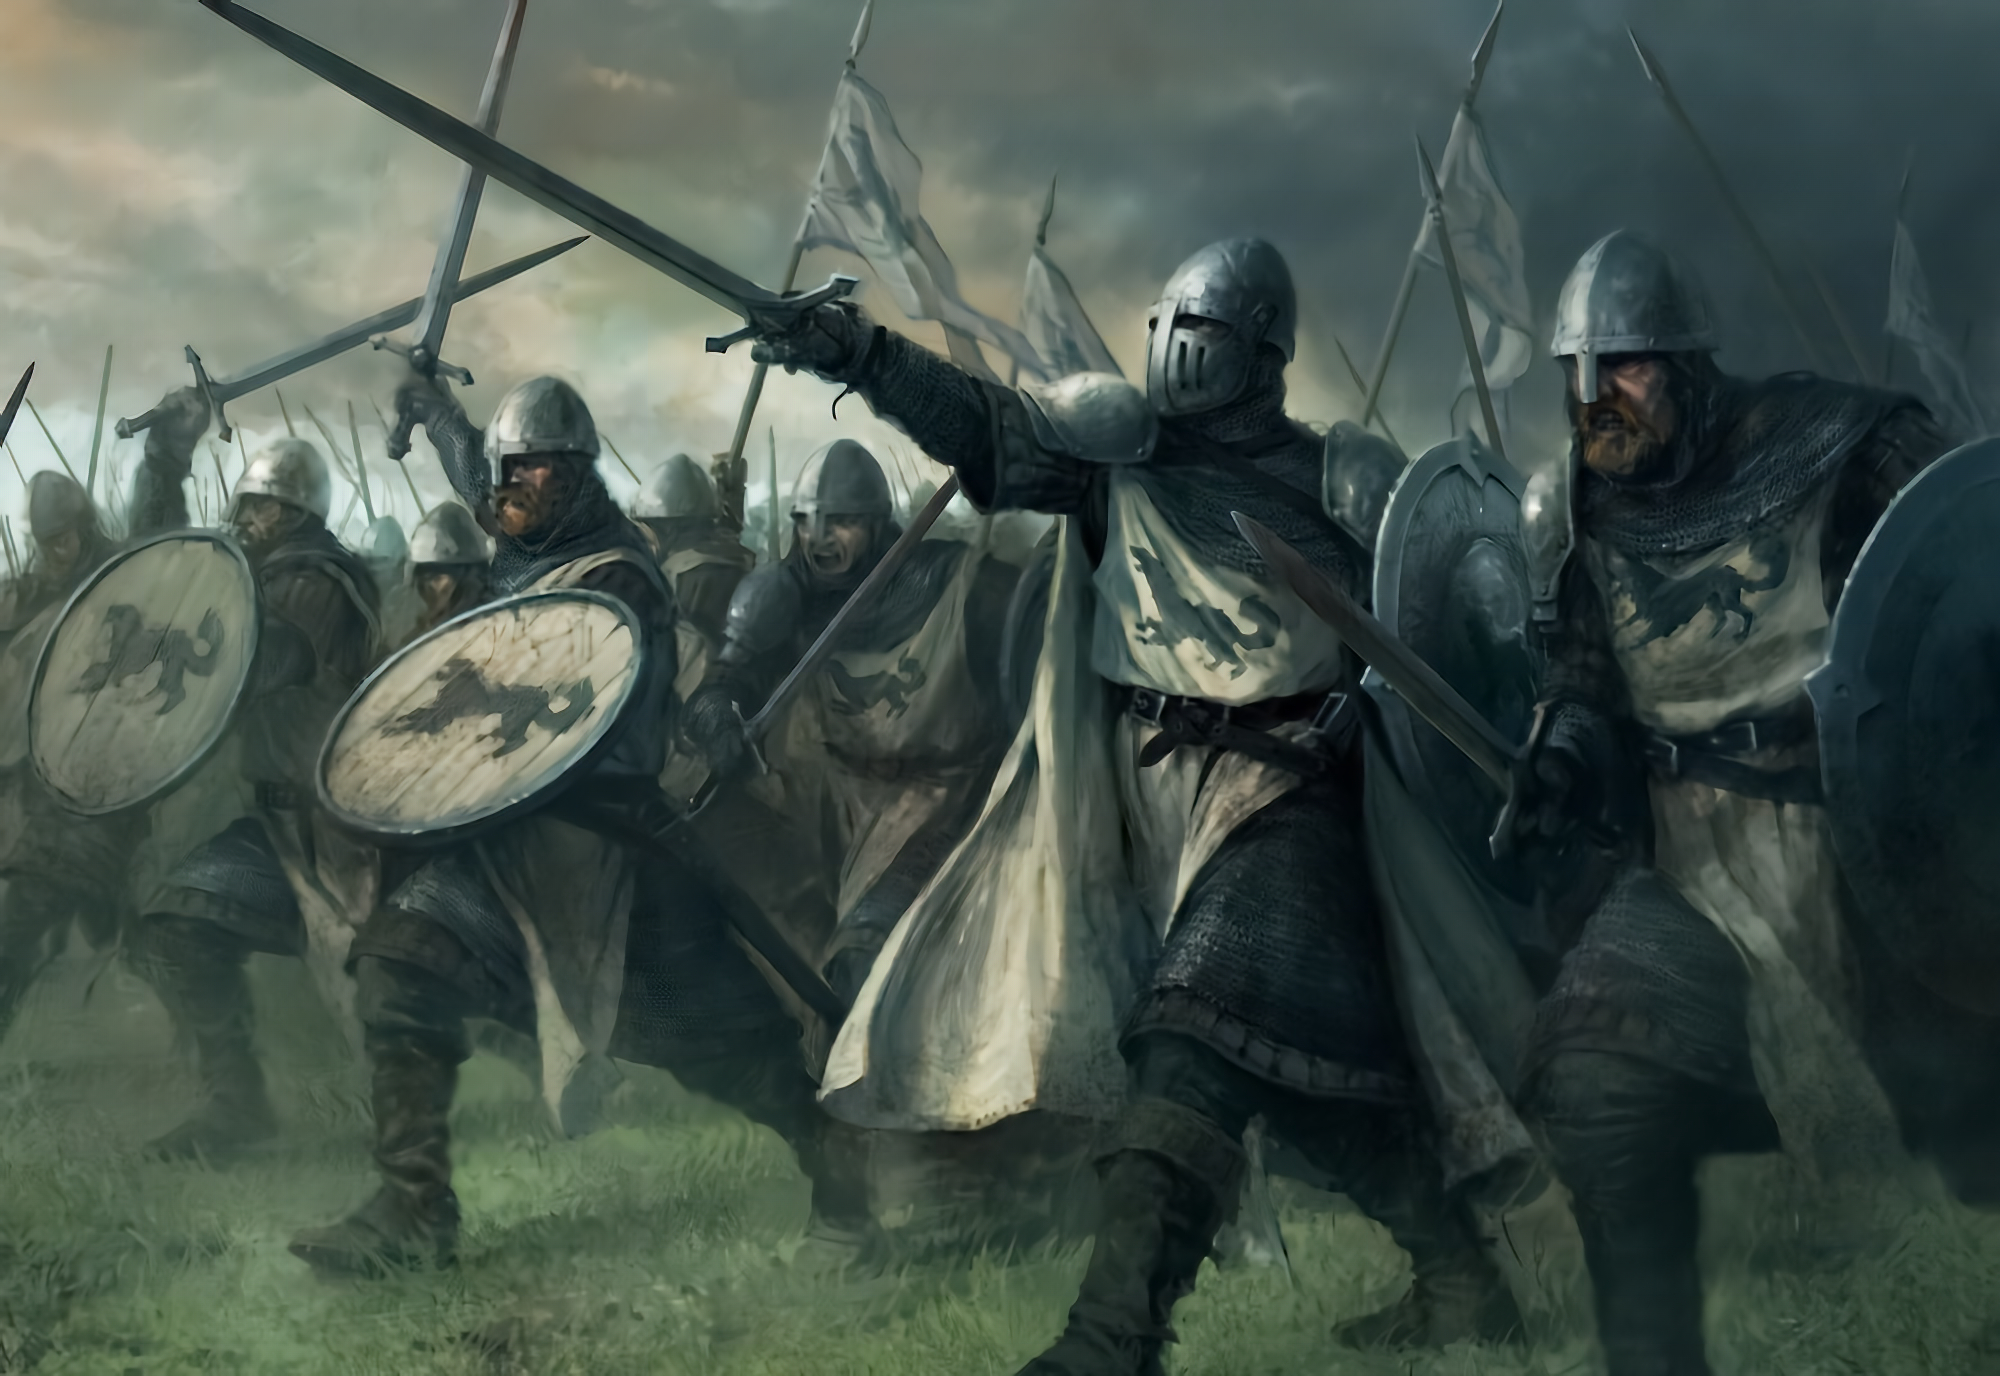 Fantasy Art Warrior Army Knight Middle Ages Digital Art 2000x1376